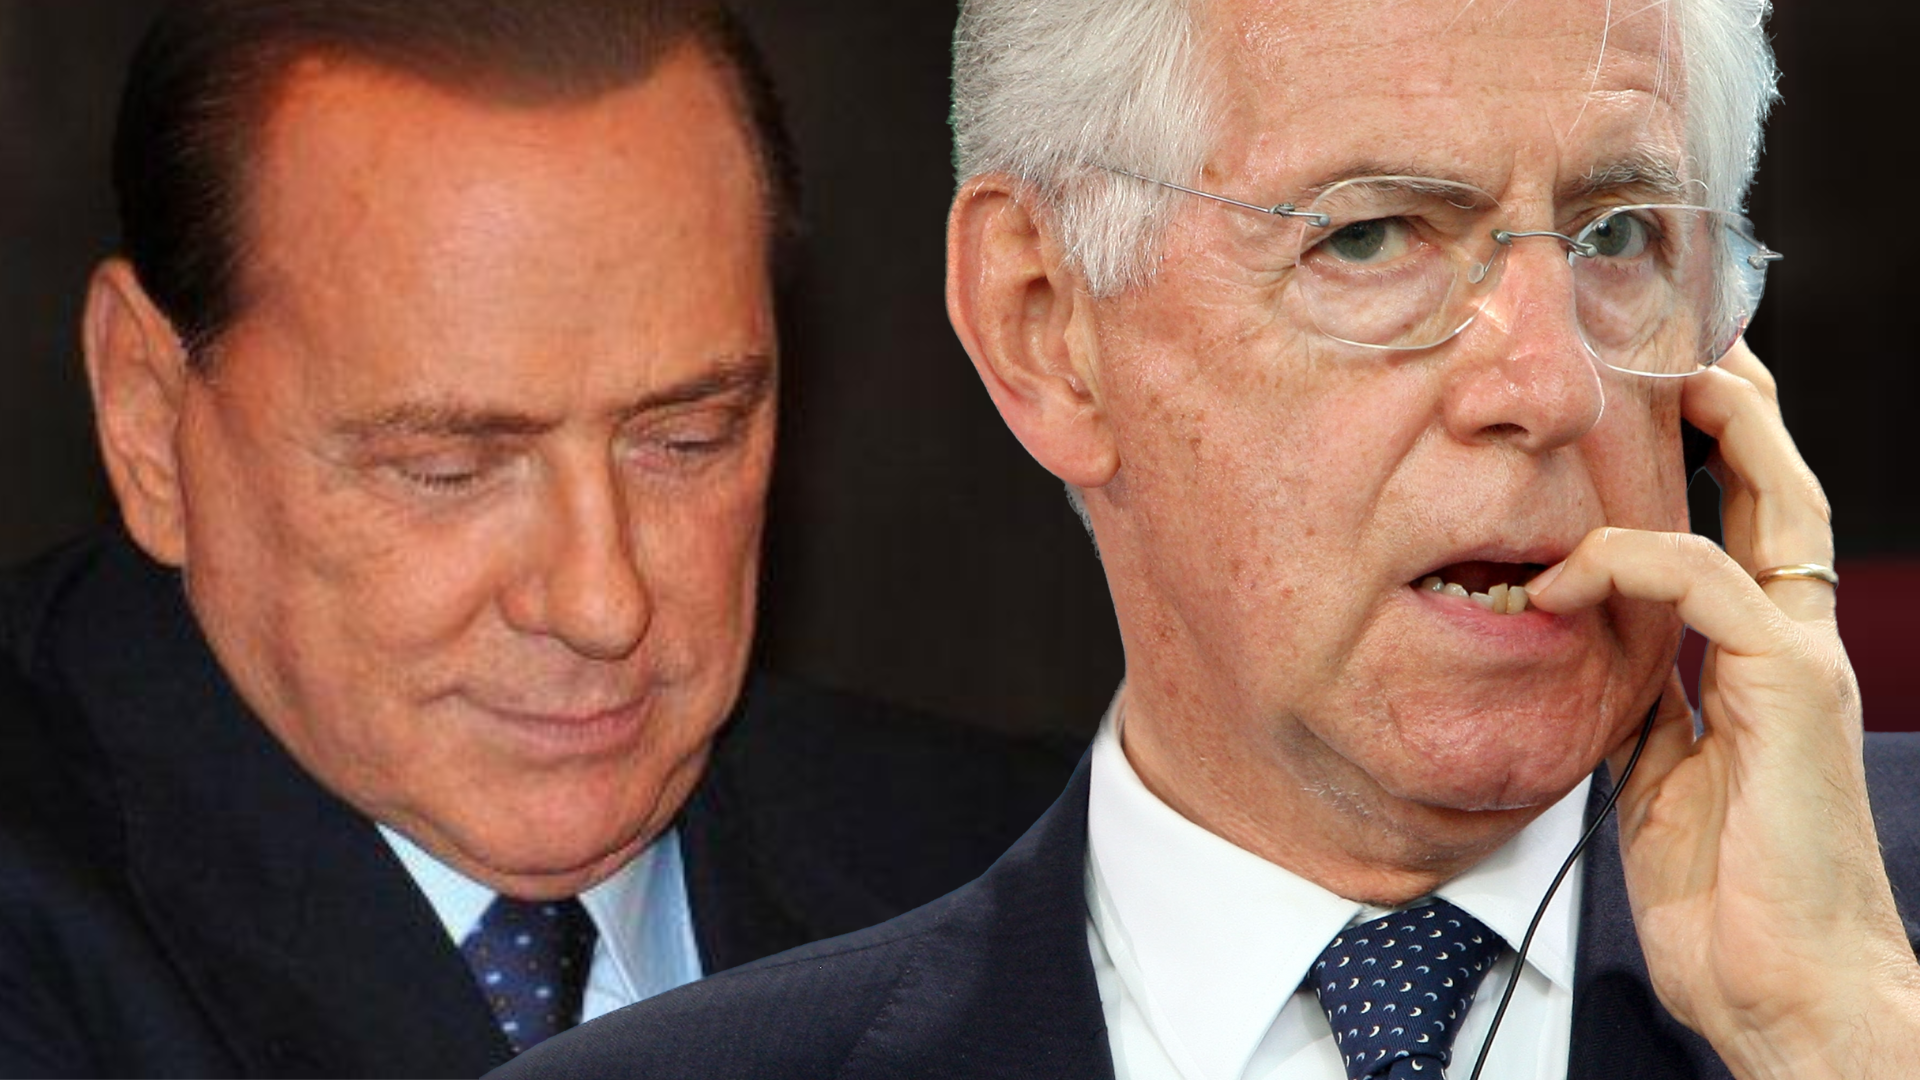 Mario Monti: “Nel ‘94 Berlusconi mi offrí la guida del centrodestra ma io rifiutai”. La fortuna aiuta gli audaci